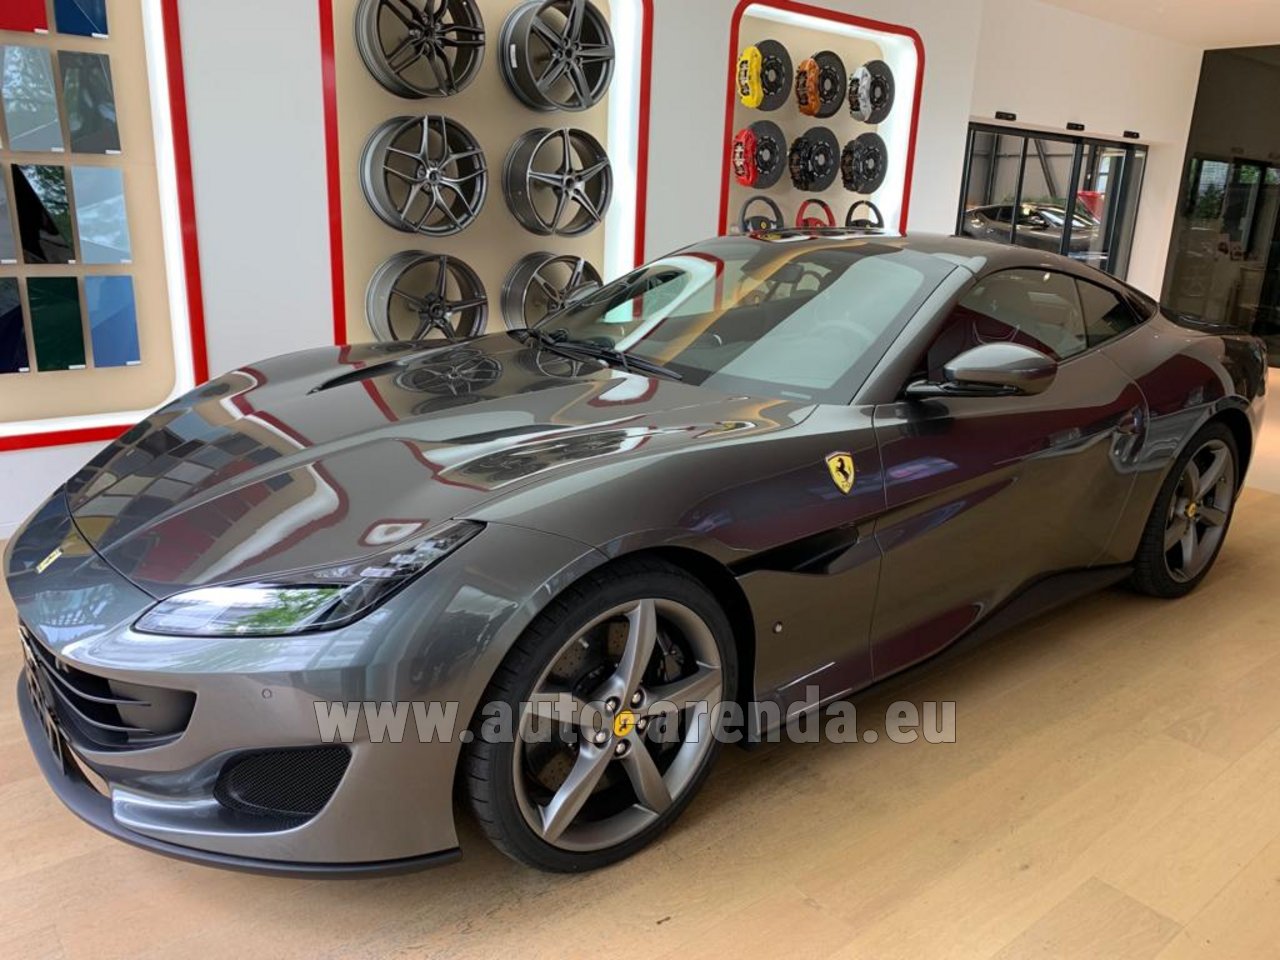 Rent the Ferrari Portofino car in Monte Carlo